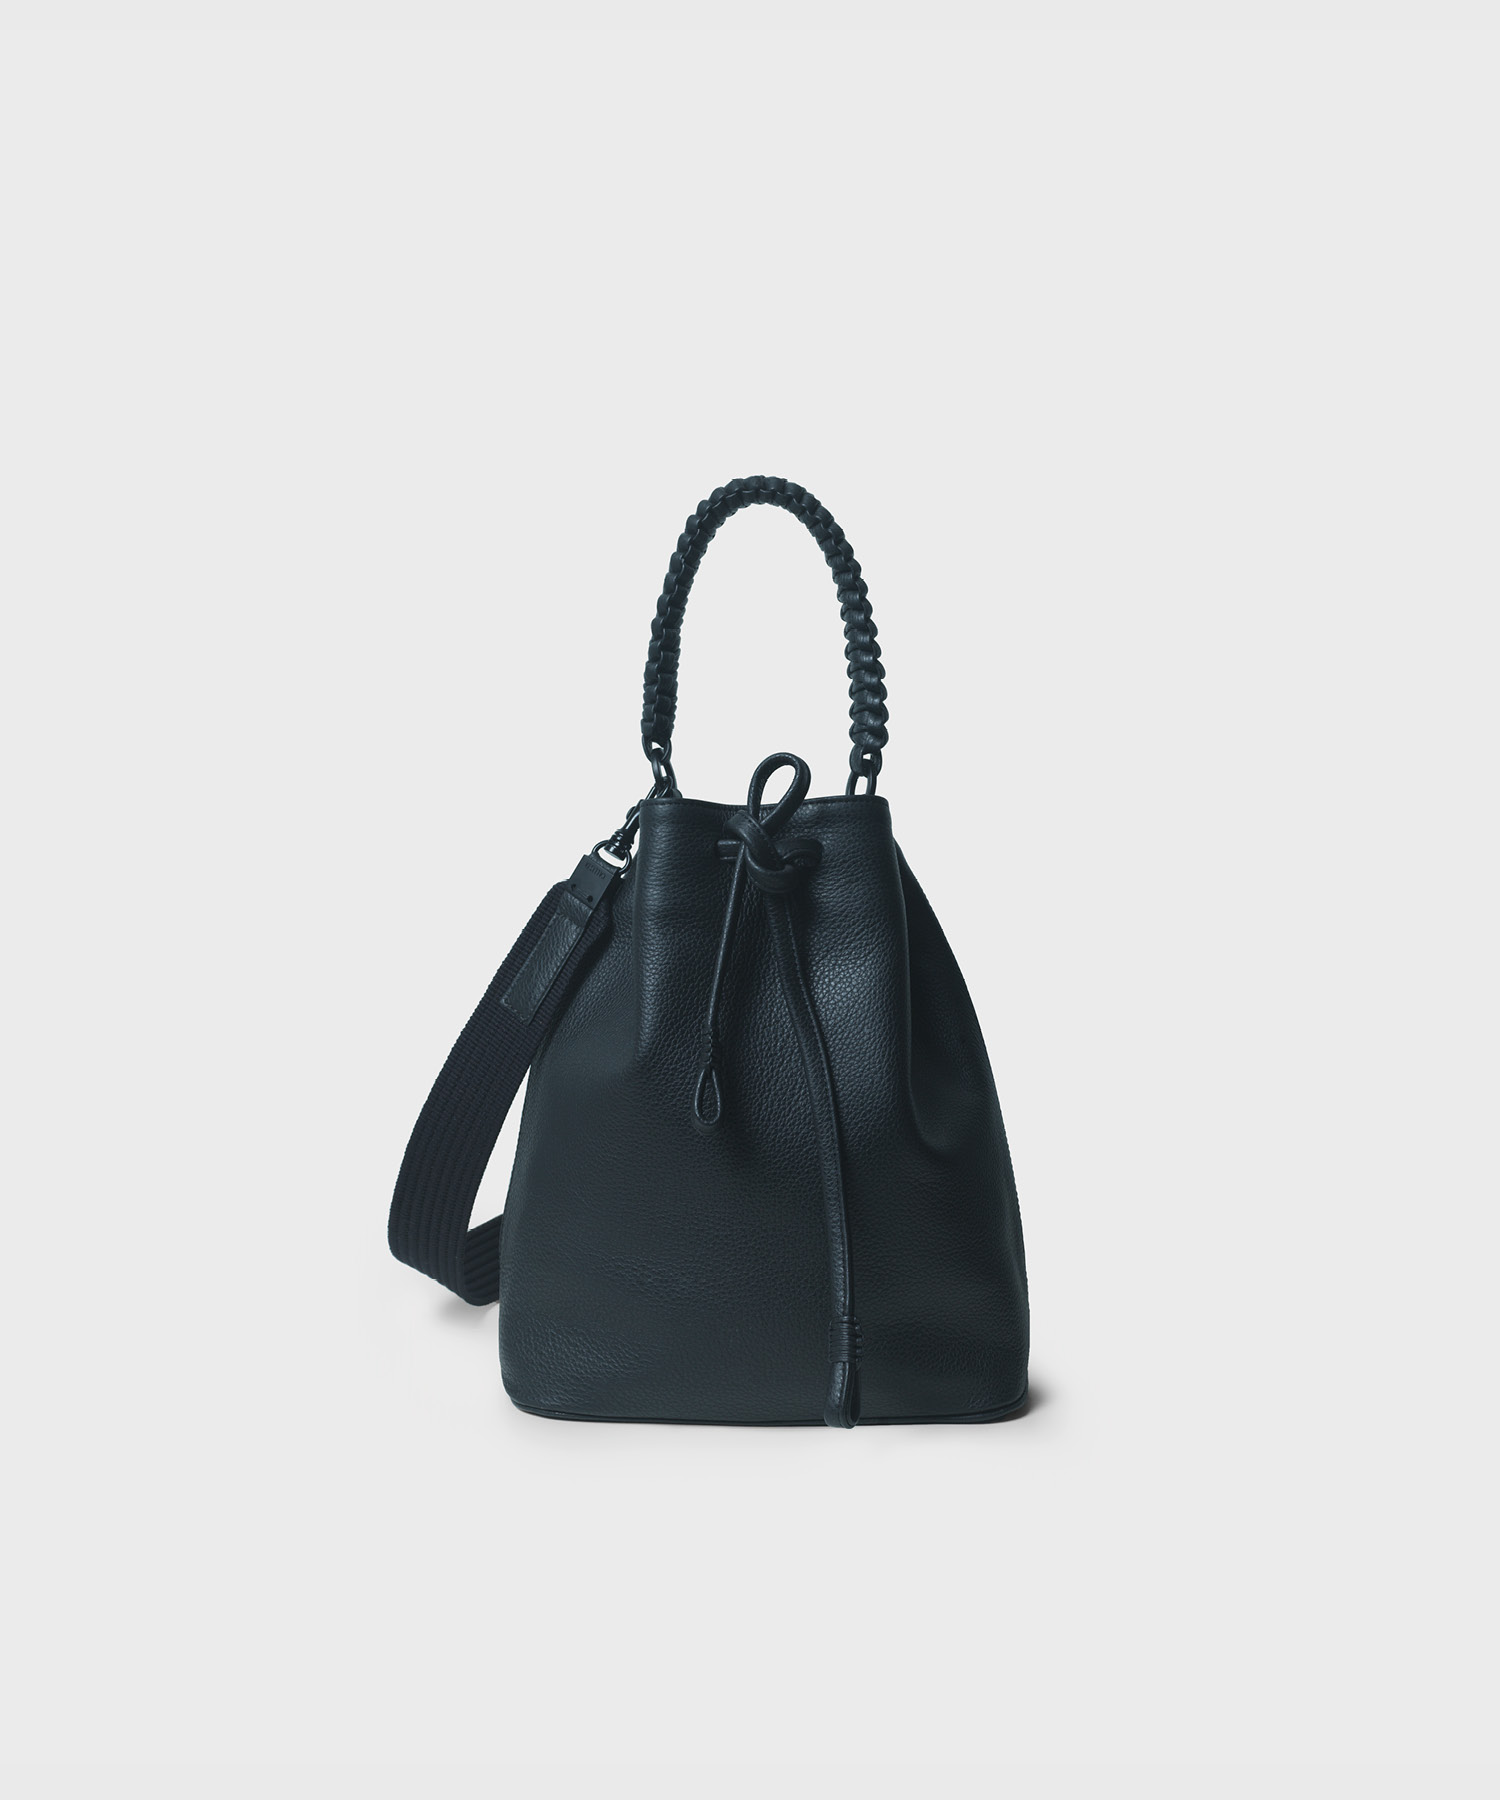 Bucket Bag 23 in Black Grained Leather - Callista